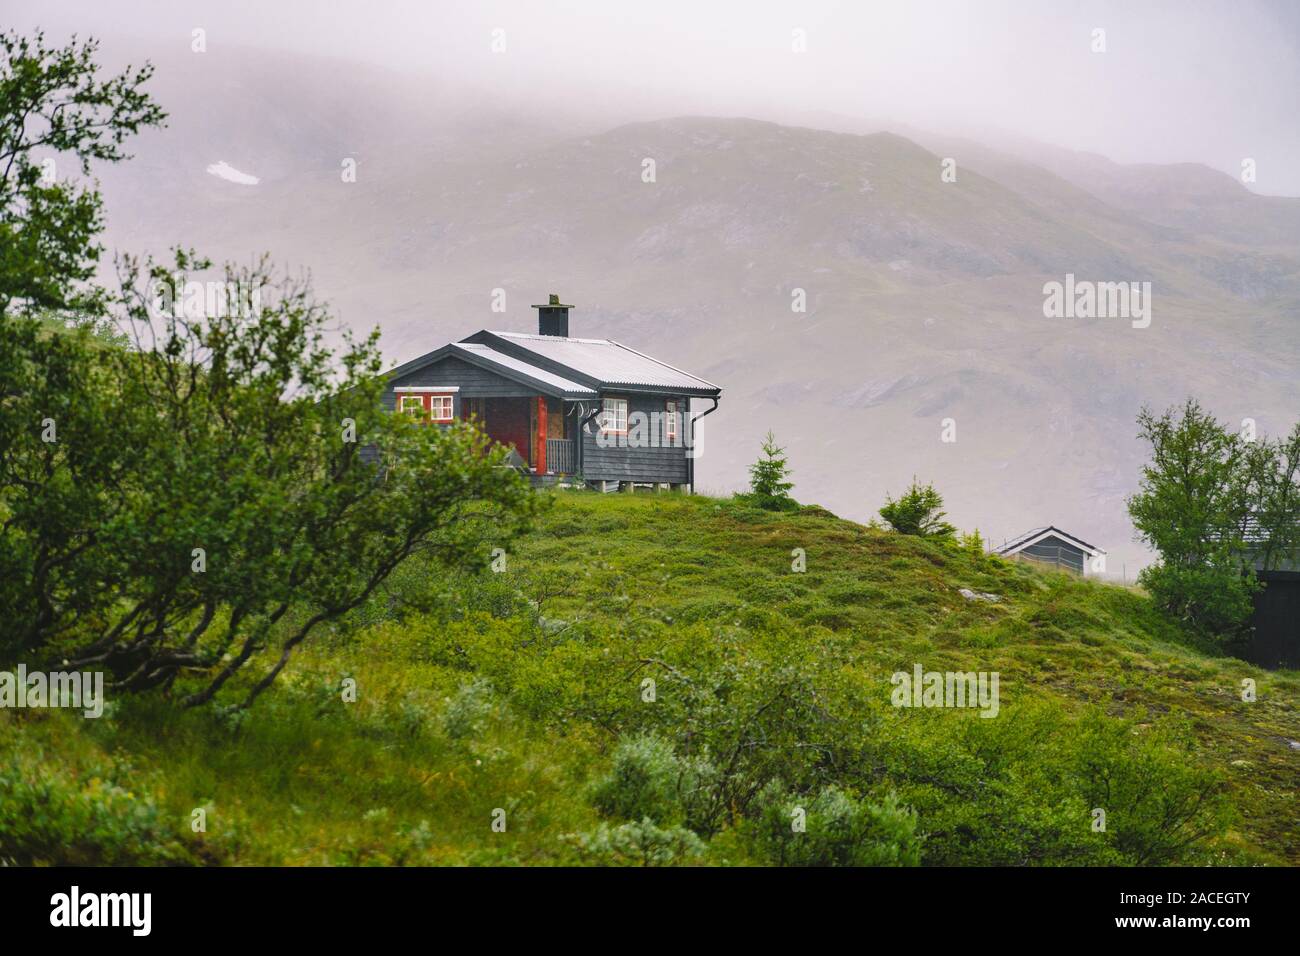 En bois cabane col de montagne refuges de montagne en Norvège. Paysage norvégien avec des maisons aux toits d'herbe typiquement scandinave. Village de montagne avec de petites maisons Banque D'Images